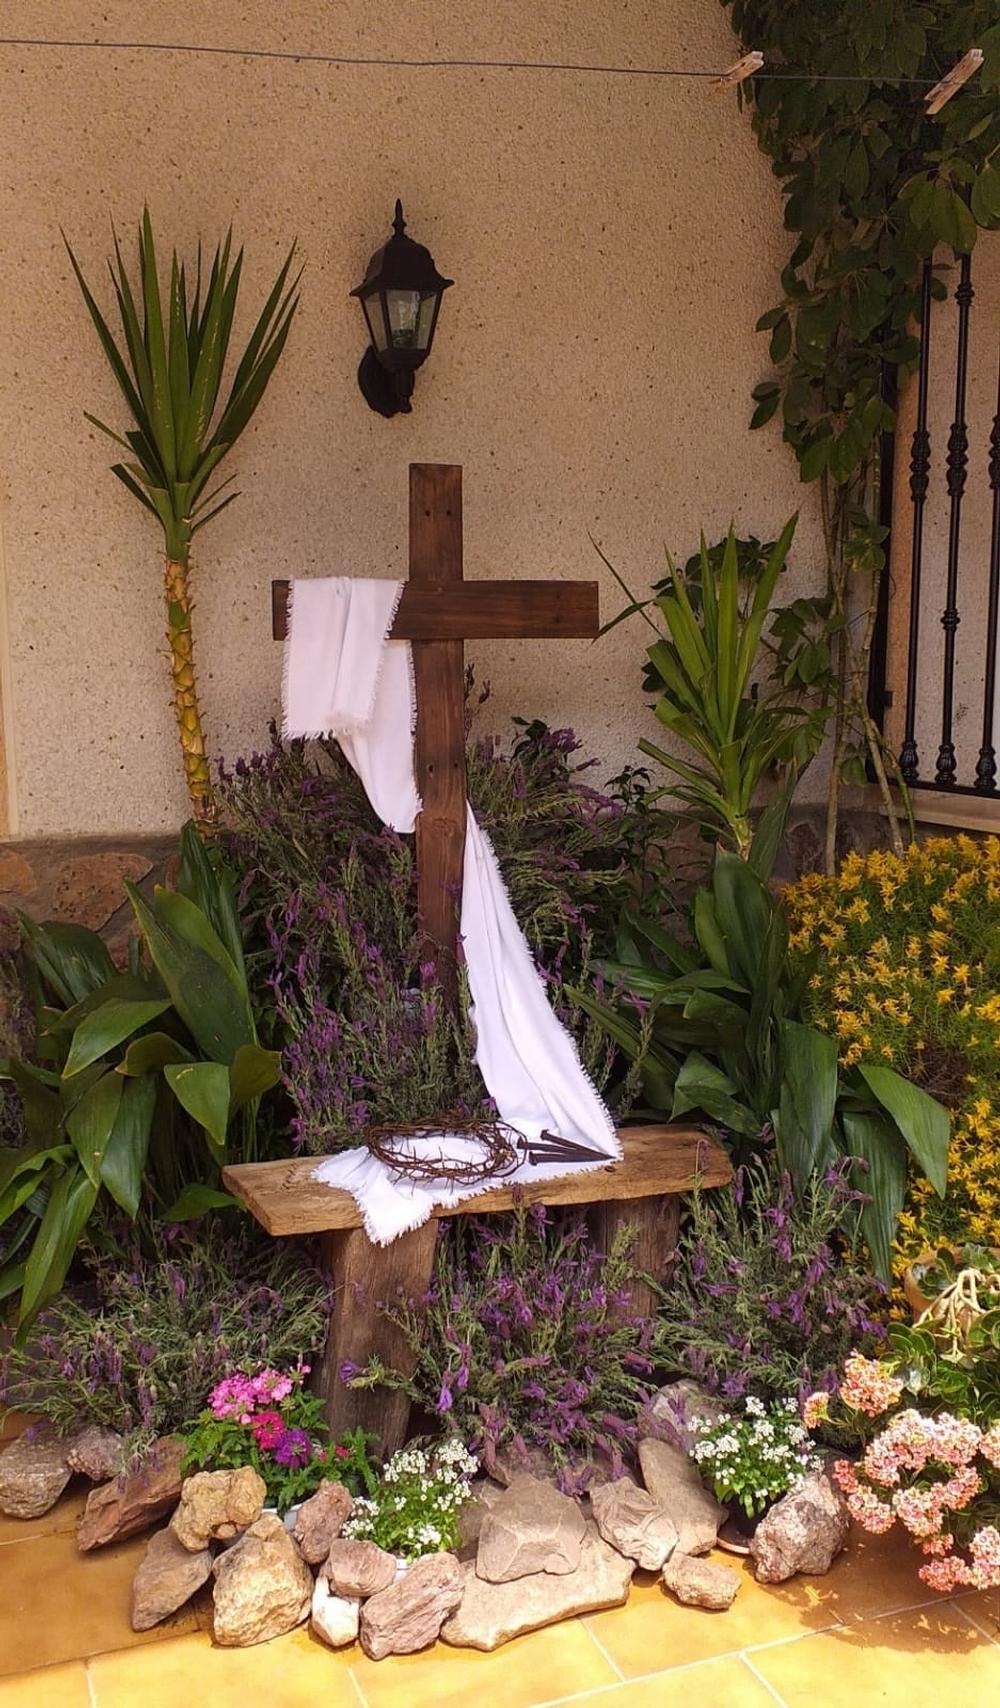 Malagón celebra las Cruces de Mayo  